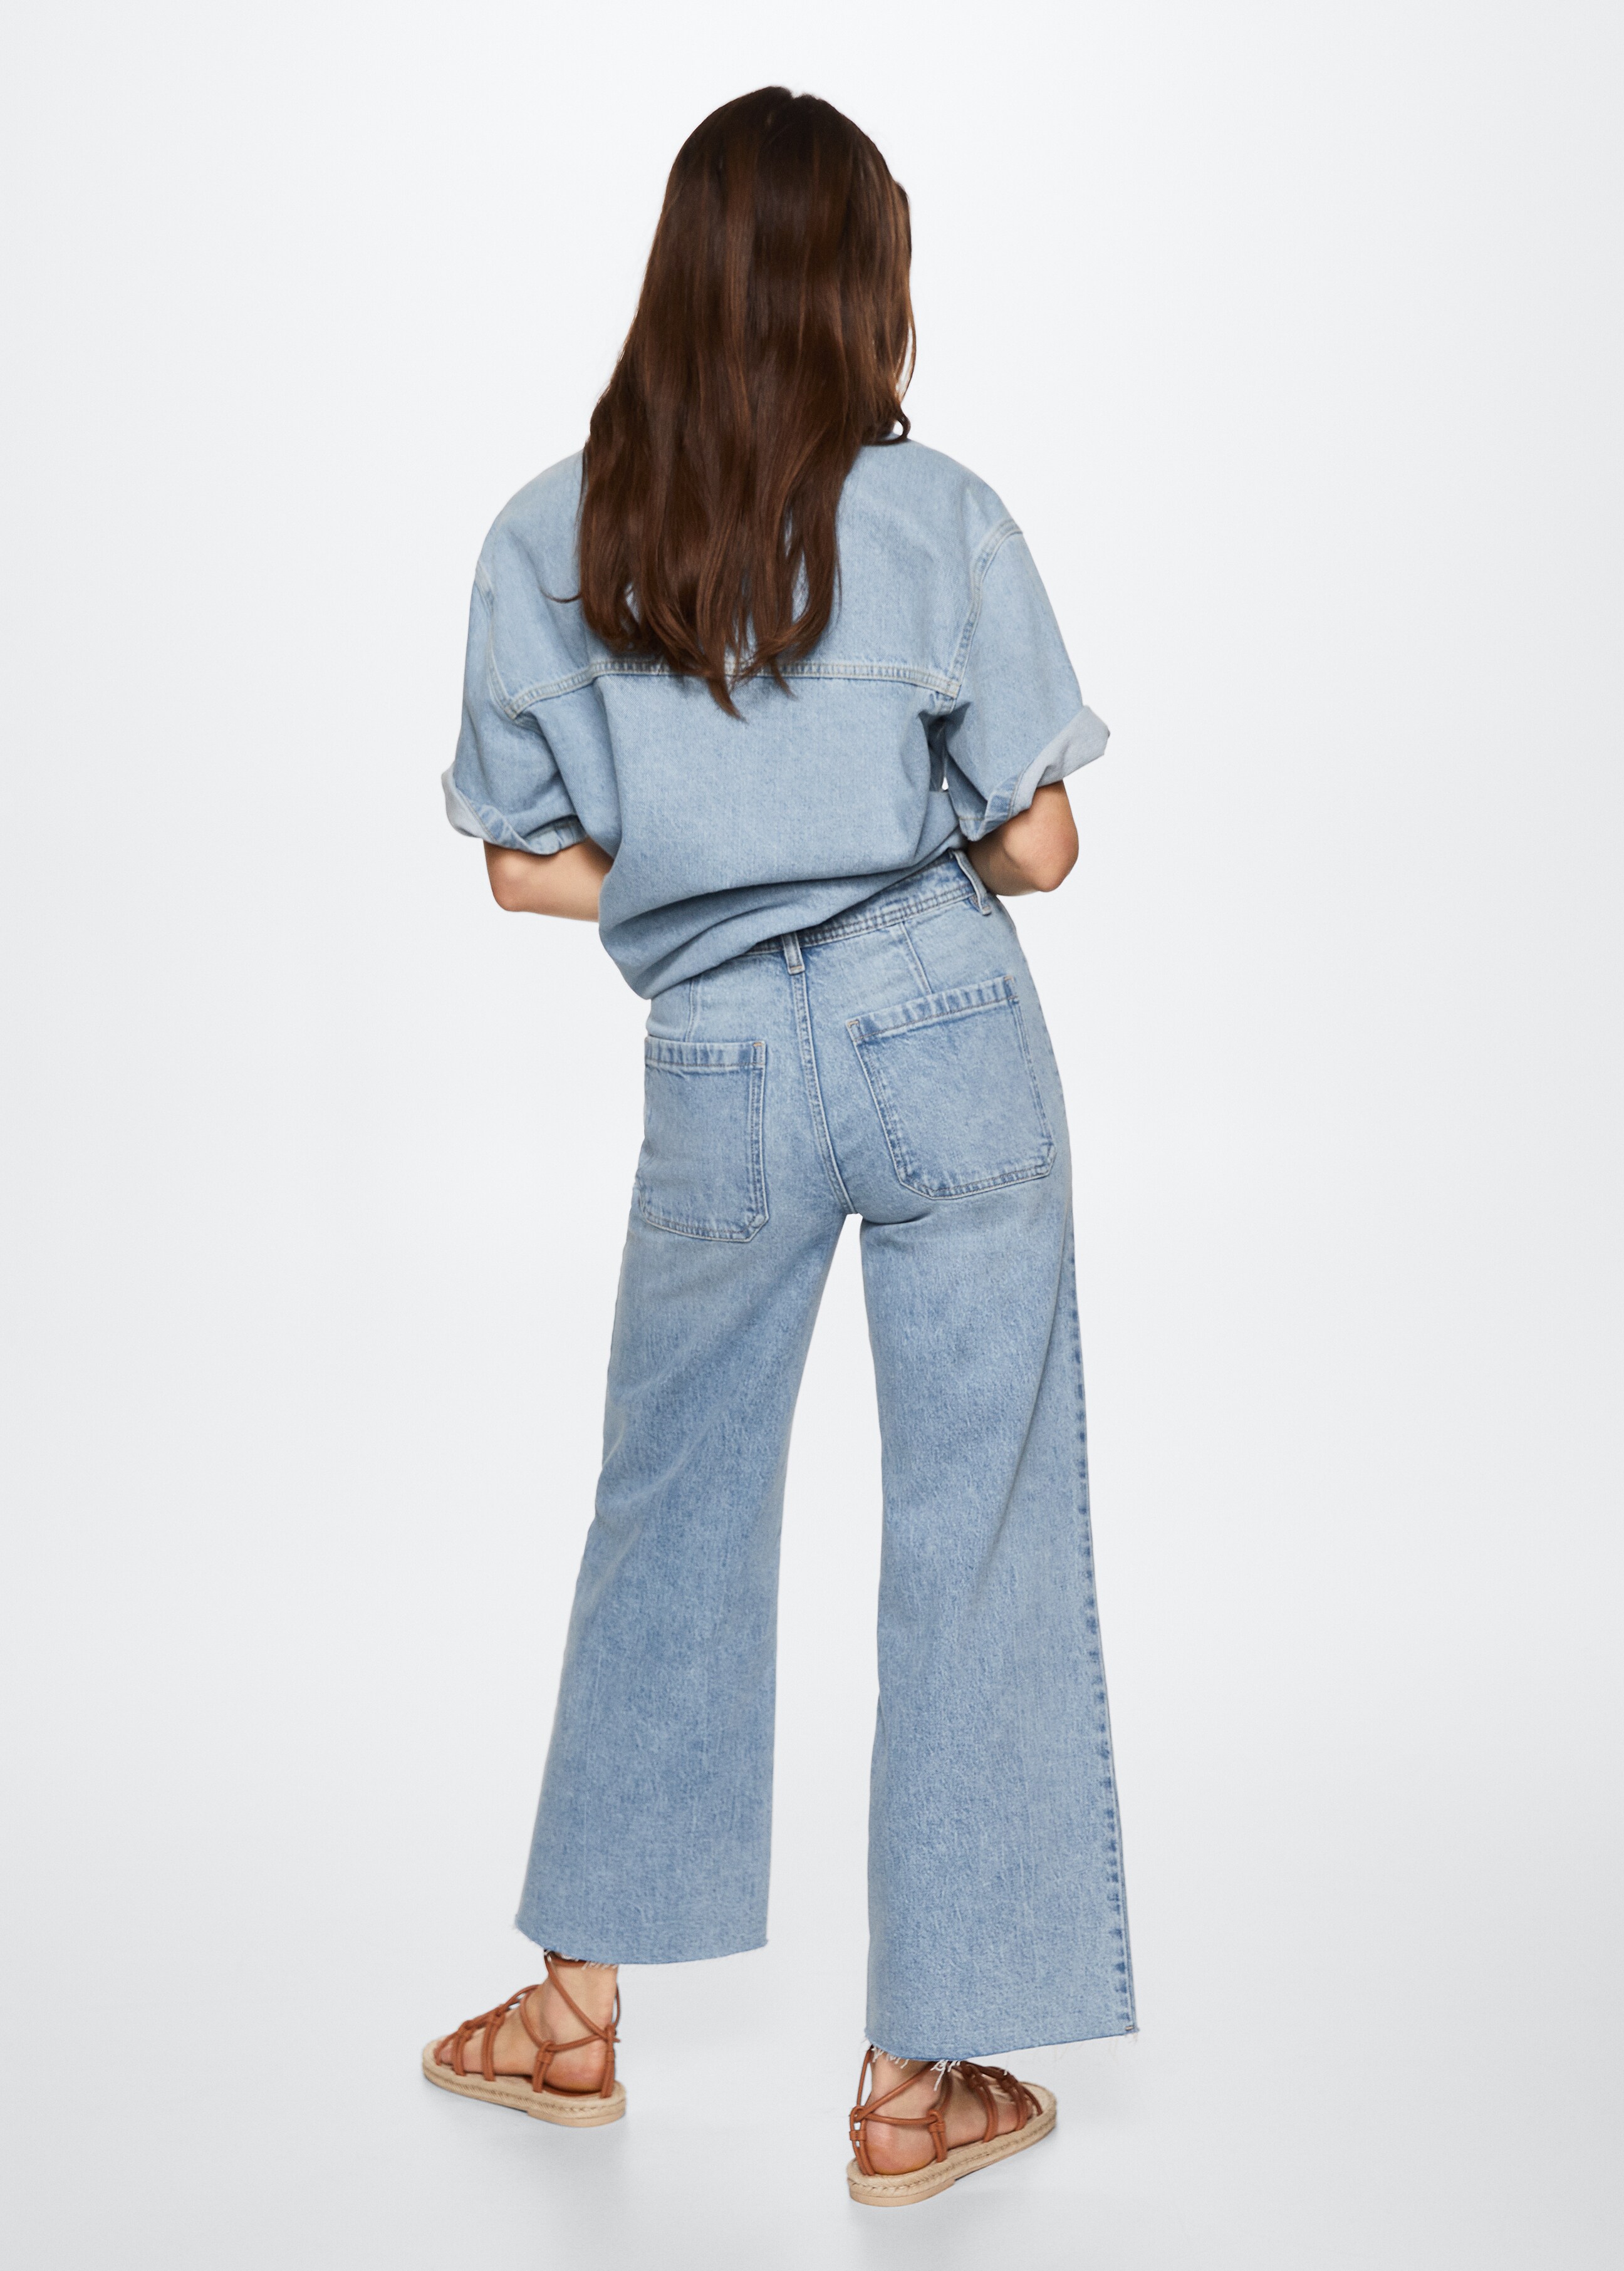 Culotte-Jeans mit hohem Bund - Rückseite des Artikels